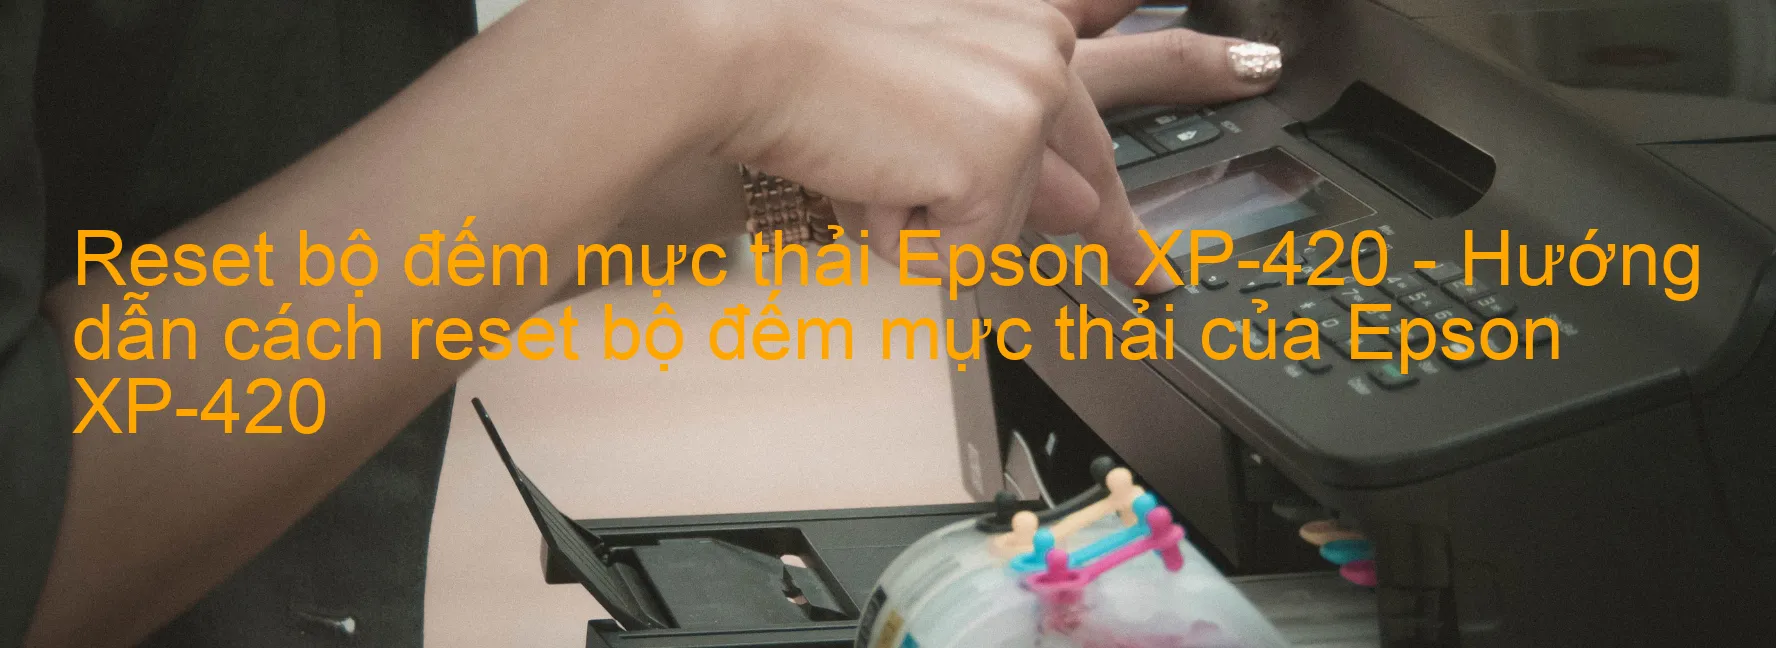 Reset bộ đếm mực thải Epson XP-420 - Hướng dẫn cách reset bộ đếm mực thải của Epson XP-420